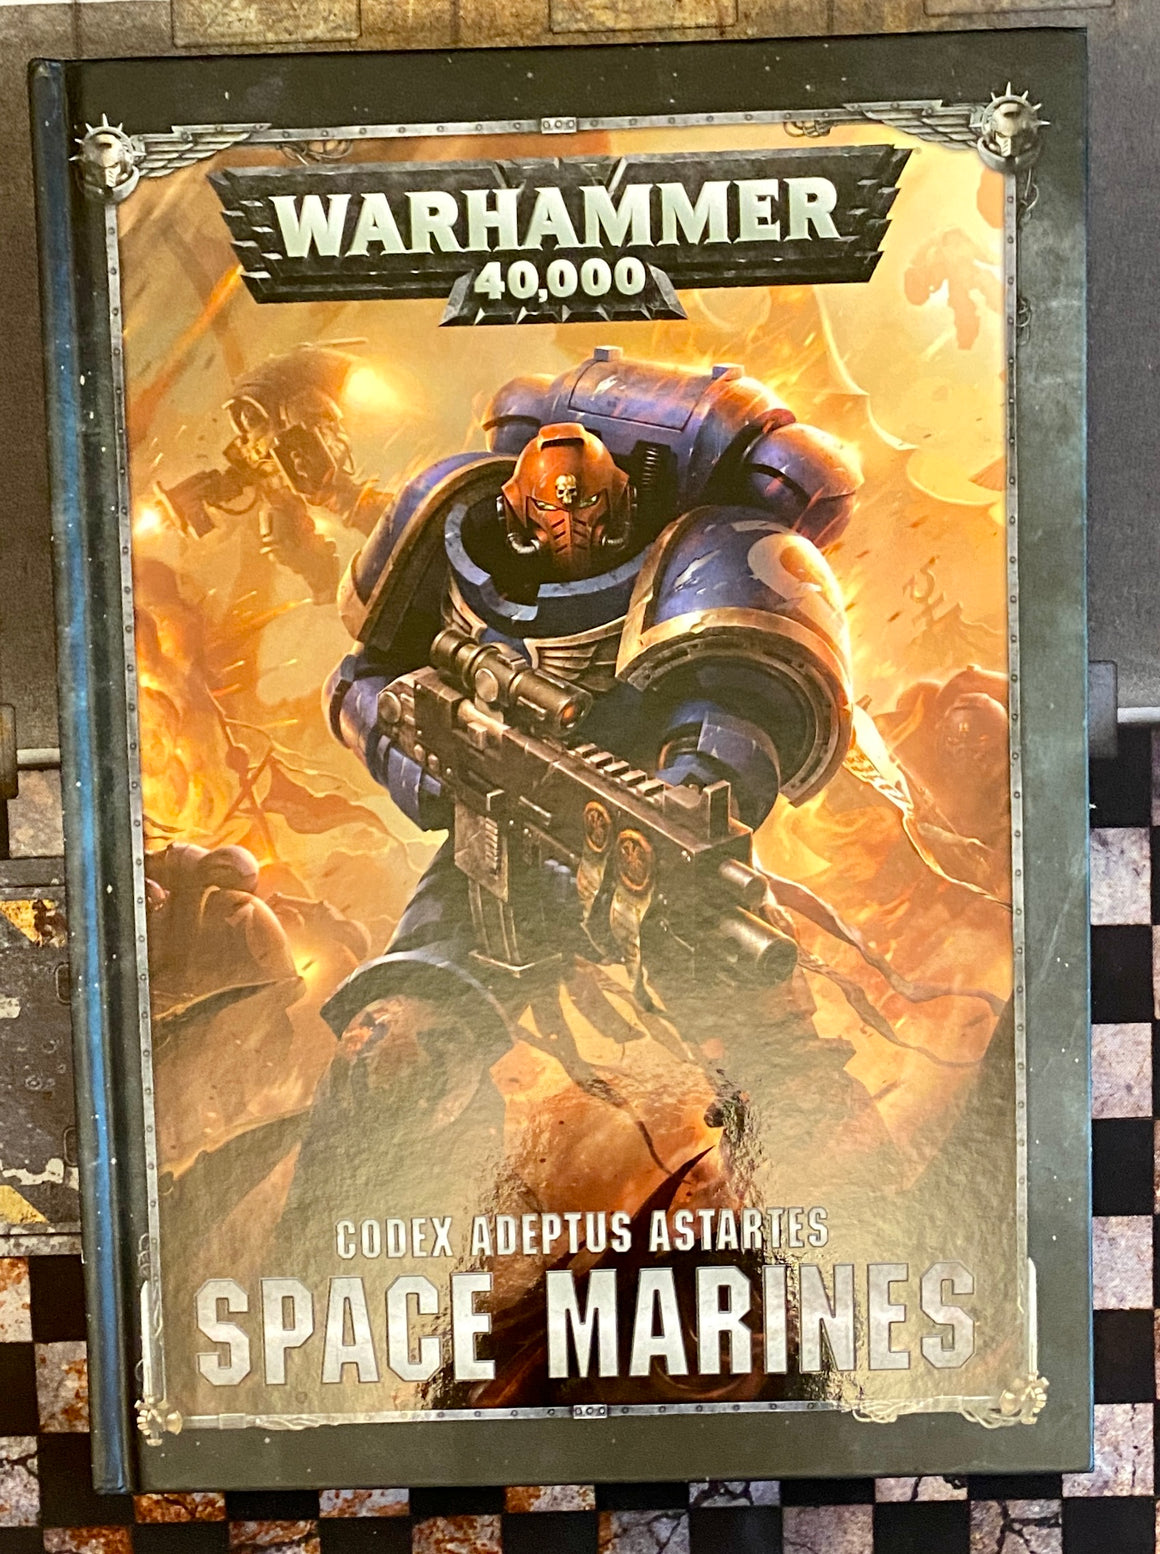 download warhammer 40k space marine 2 collector